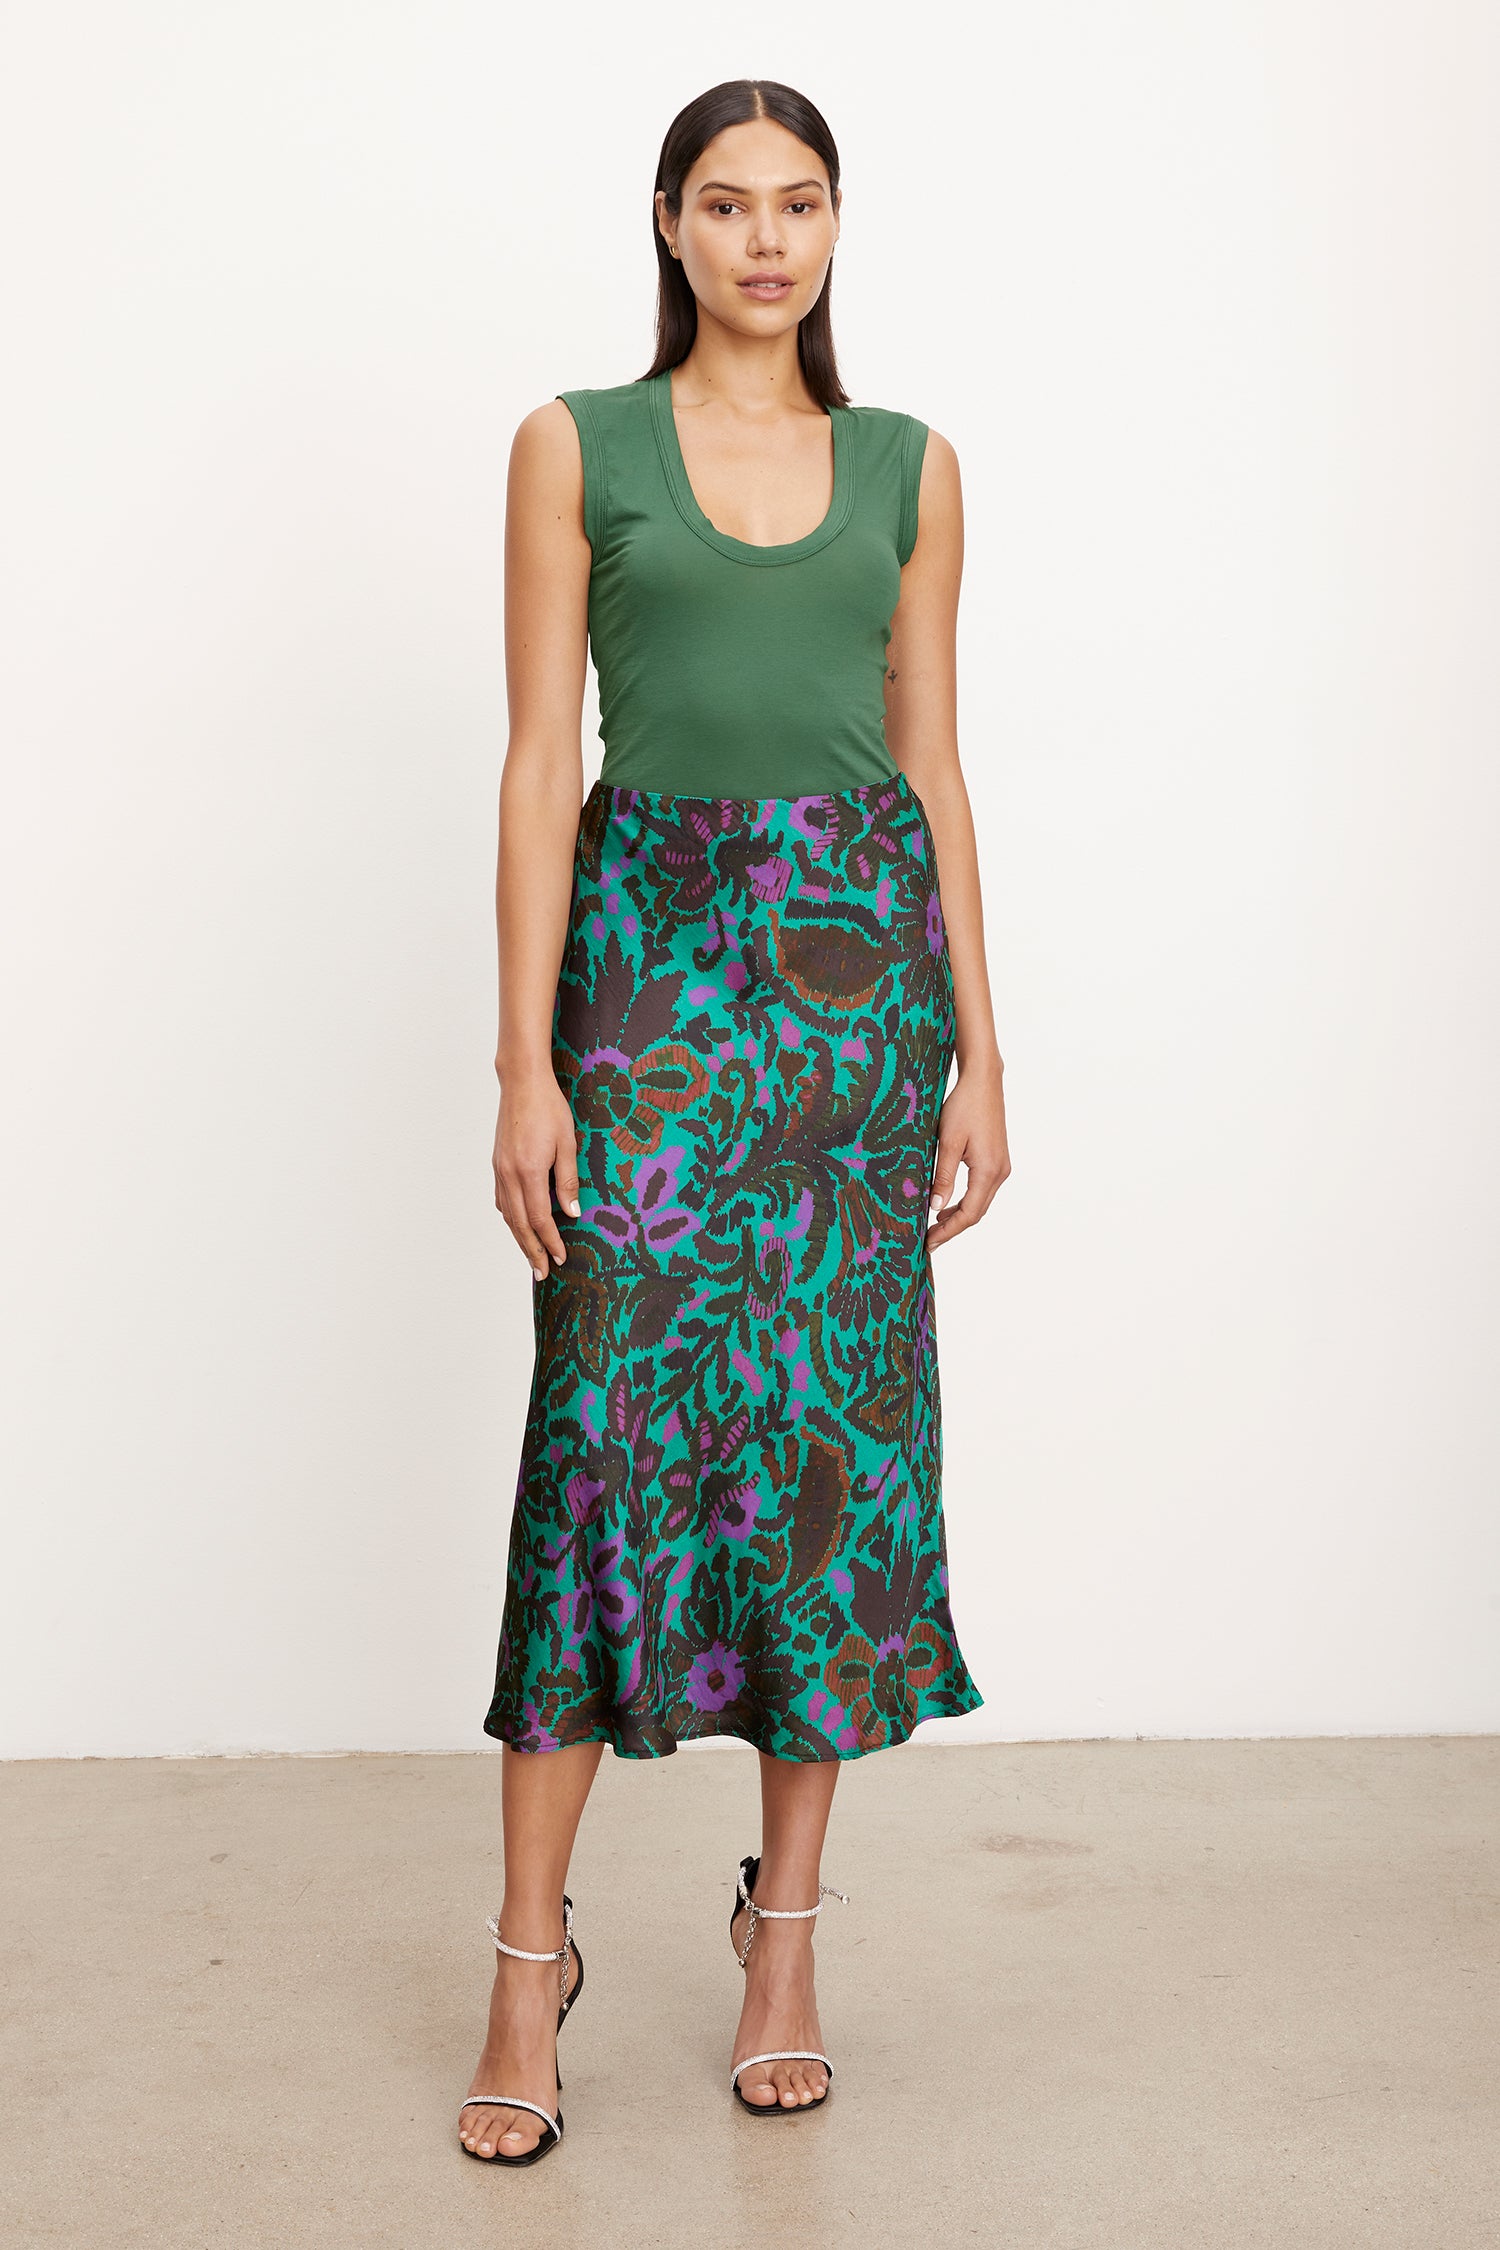 Velvet - Kaiya - Amazon Printed Satin Skirt in Multi